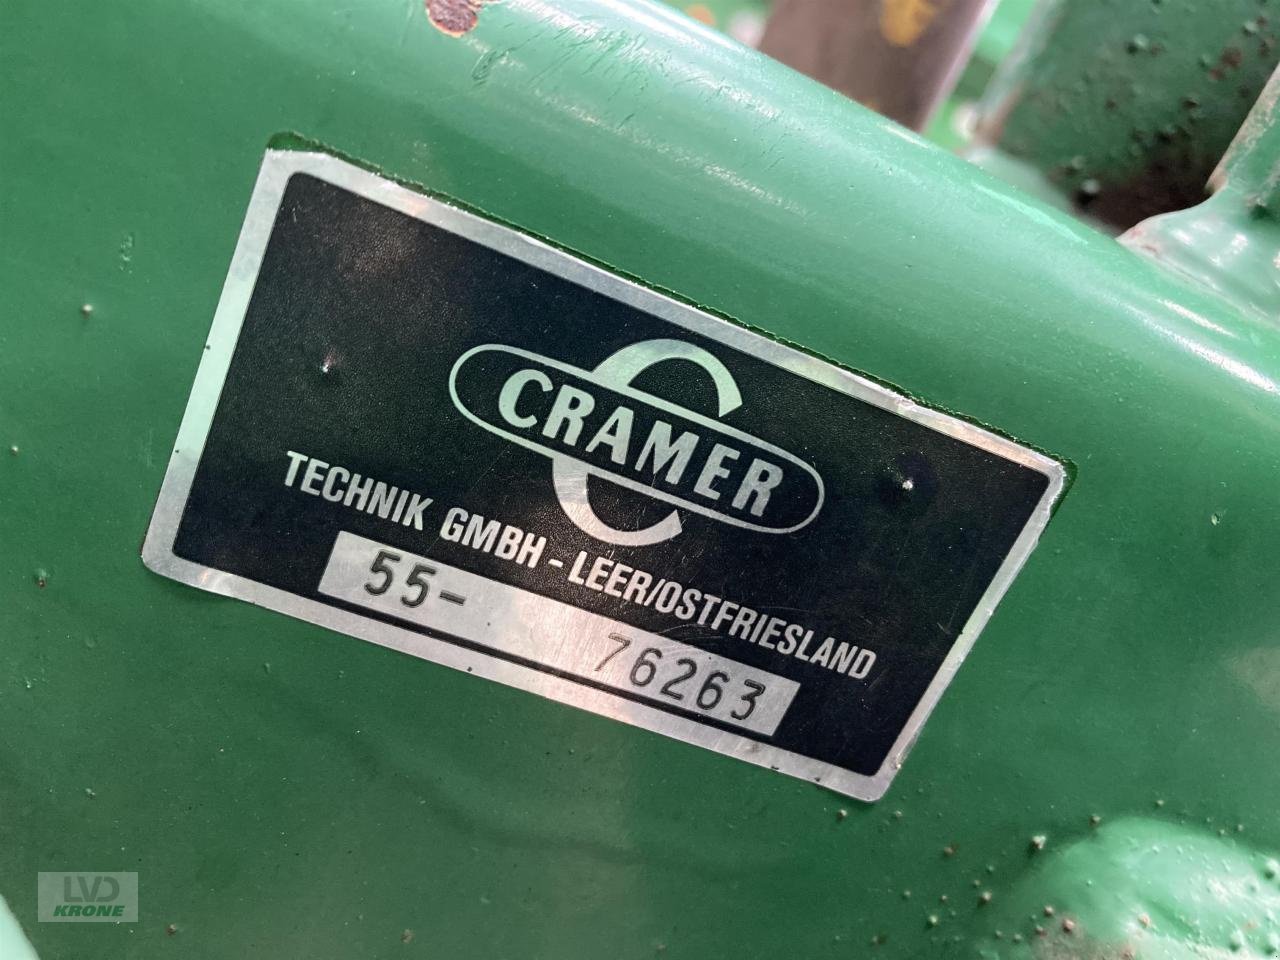 Kartoffellegemaschine типа Cramer Junior Super, Gebrauchtmaschine в Spelle (Фотография 8)